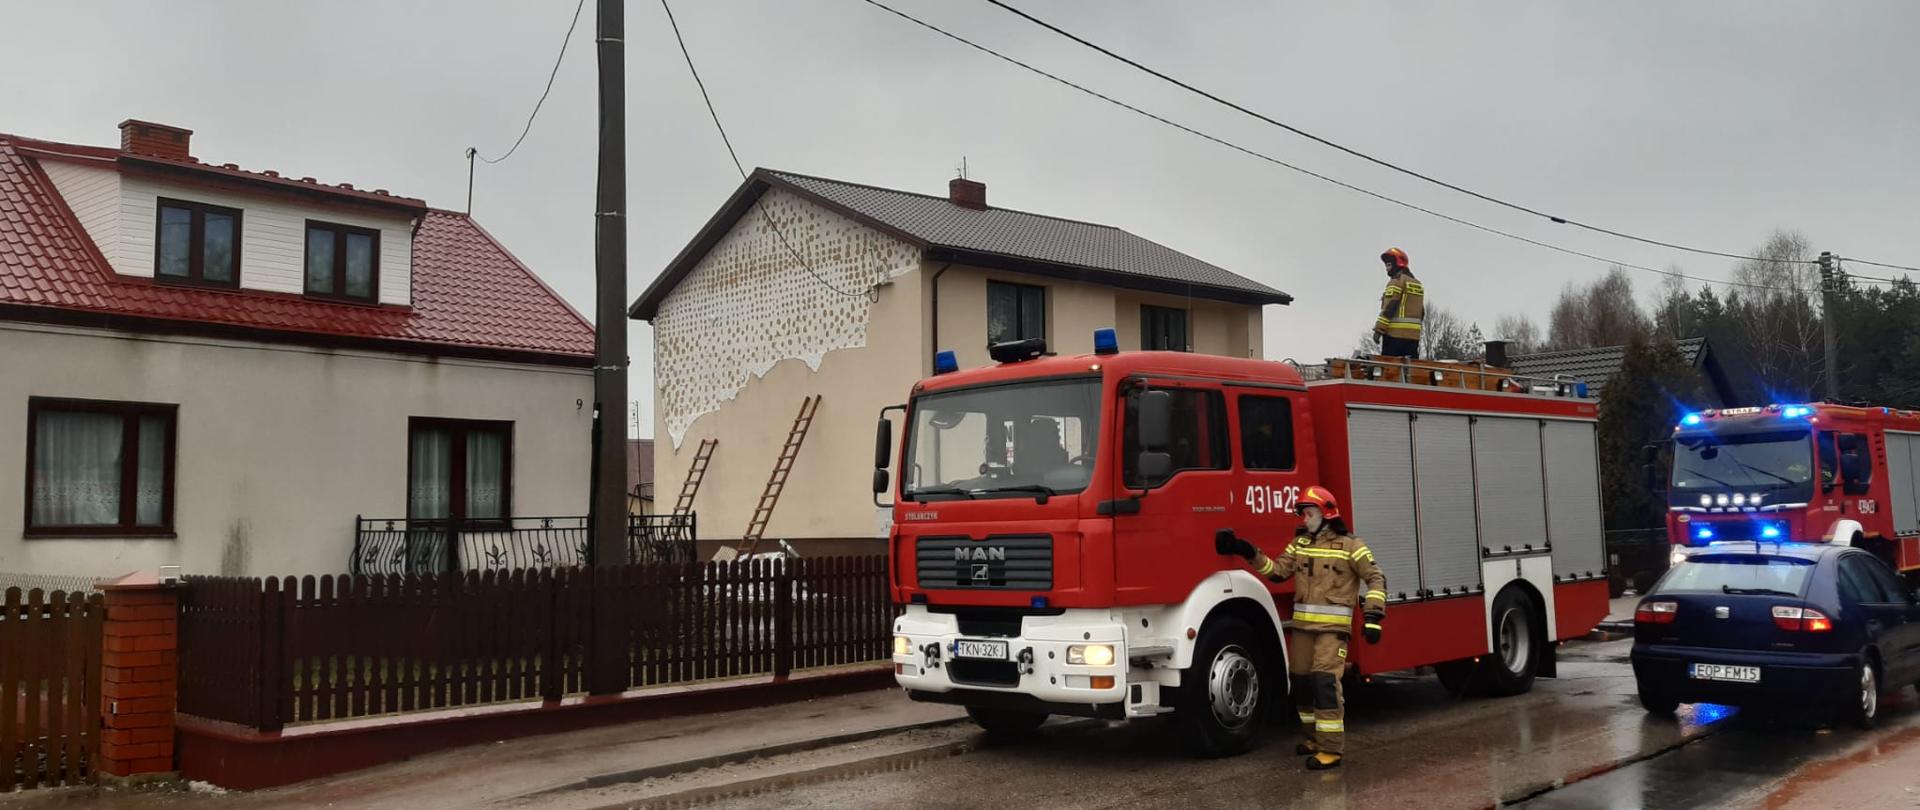 Uszkodzenie elewacji budynku w Nałęczowie